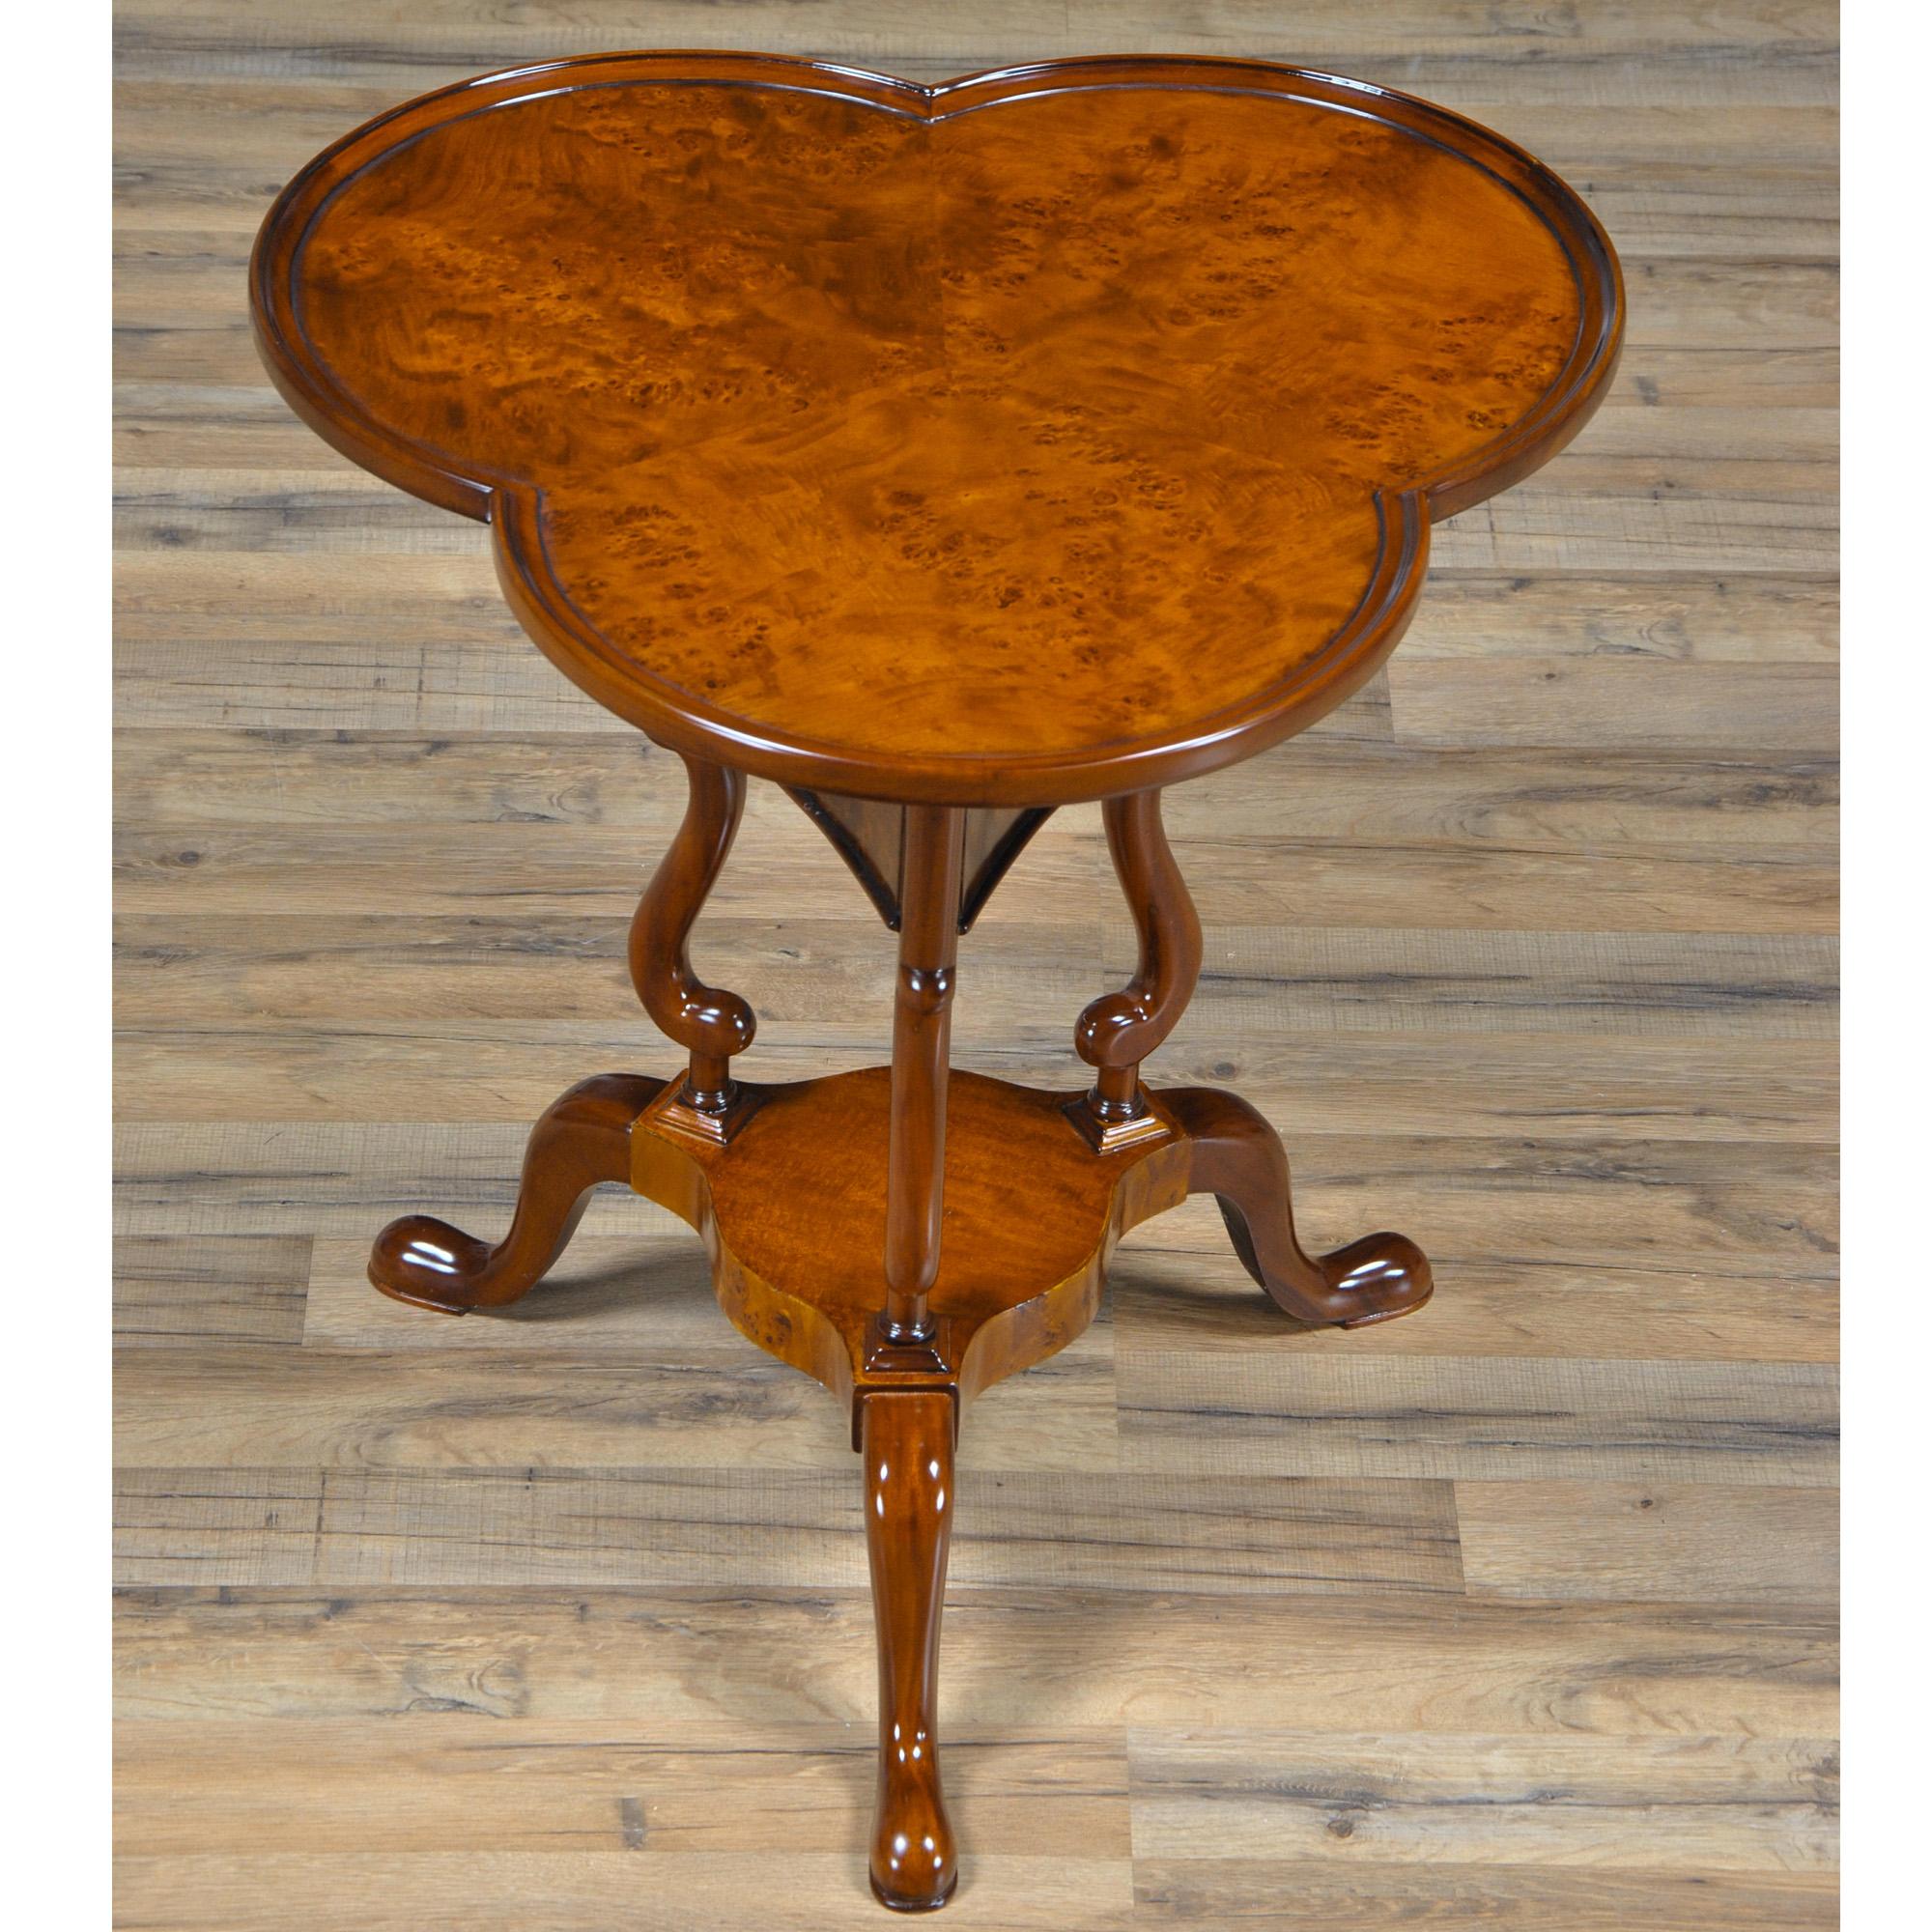 Table de haute qualité en forme de trèfle, fabriquée par Niagara Furniture. Également appelée traditionnellement table à vin. Plateau magnifiquement façonné et présenté, soutenu par des supports incurvés et façonnés et reposant sur trois pieds en